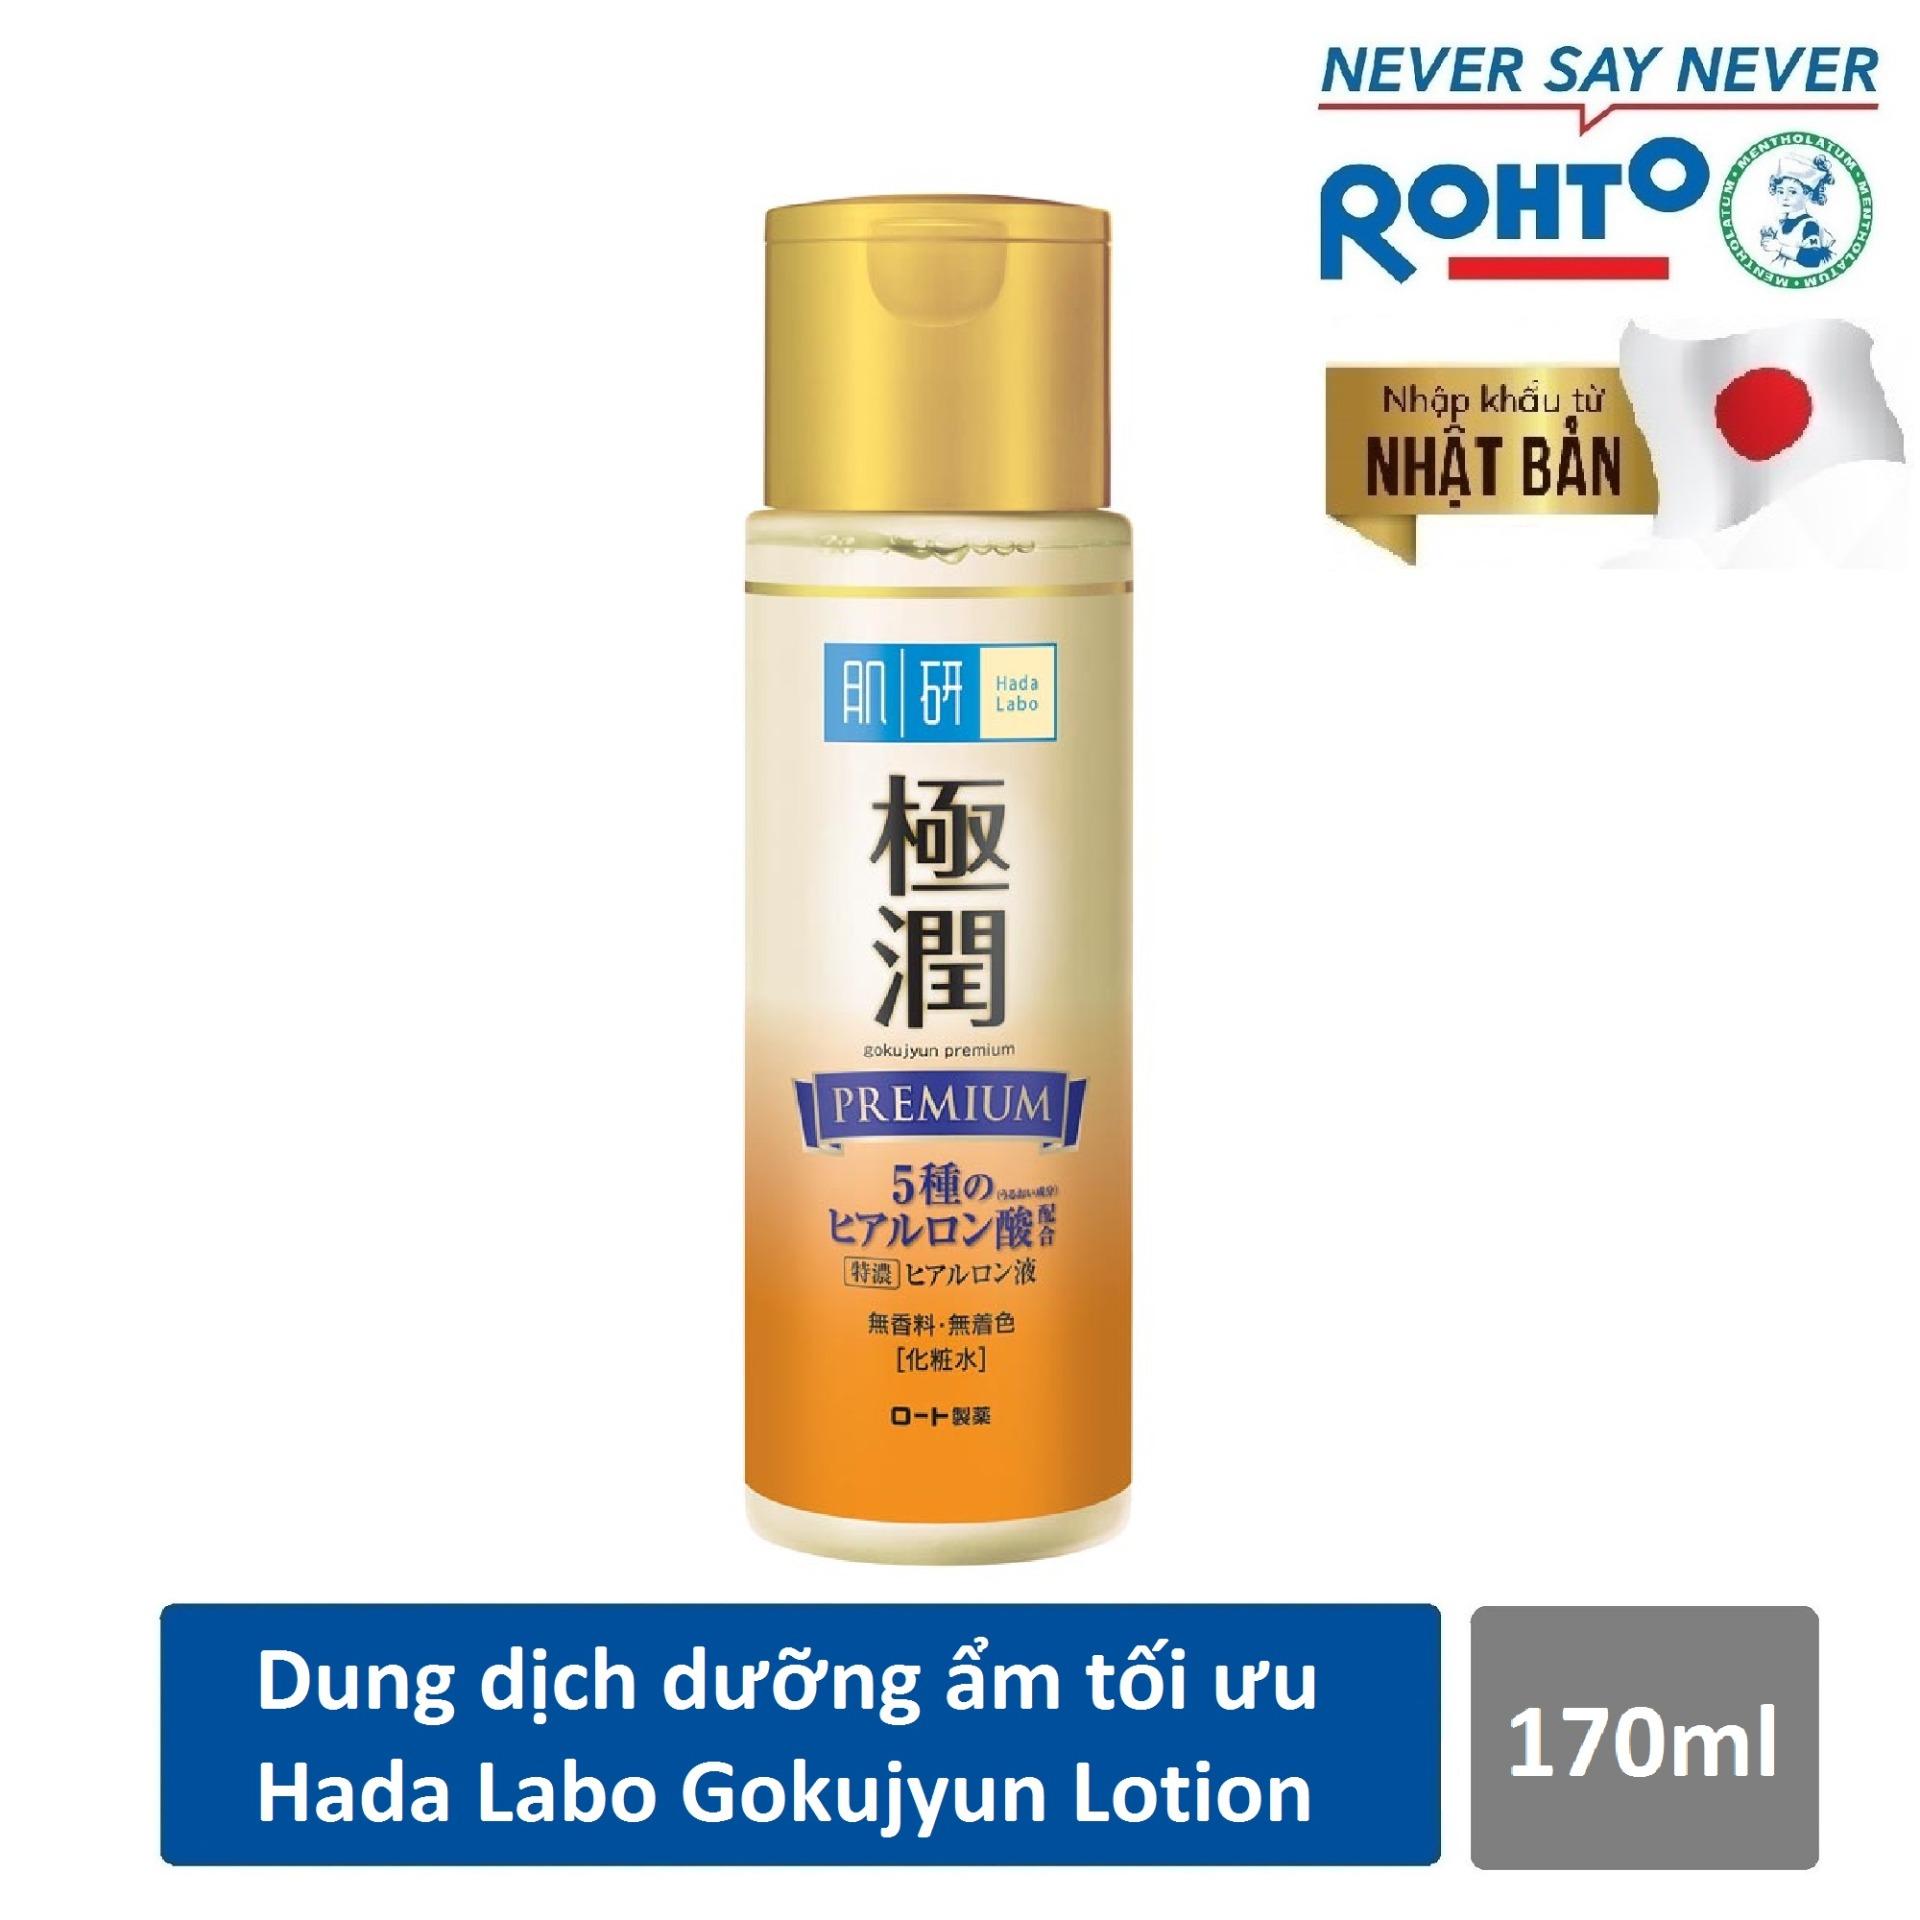 Dung dịch dưỡng ẩm tối ưu Hada Labo Gokujyun Premium Lotion 170ml